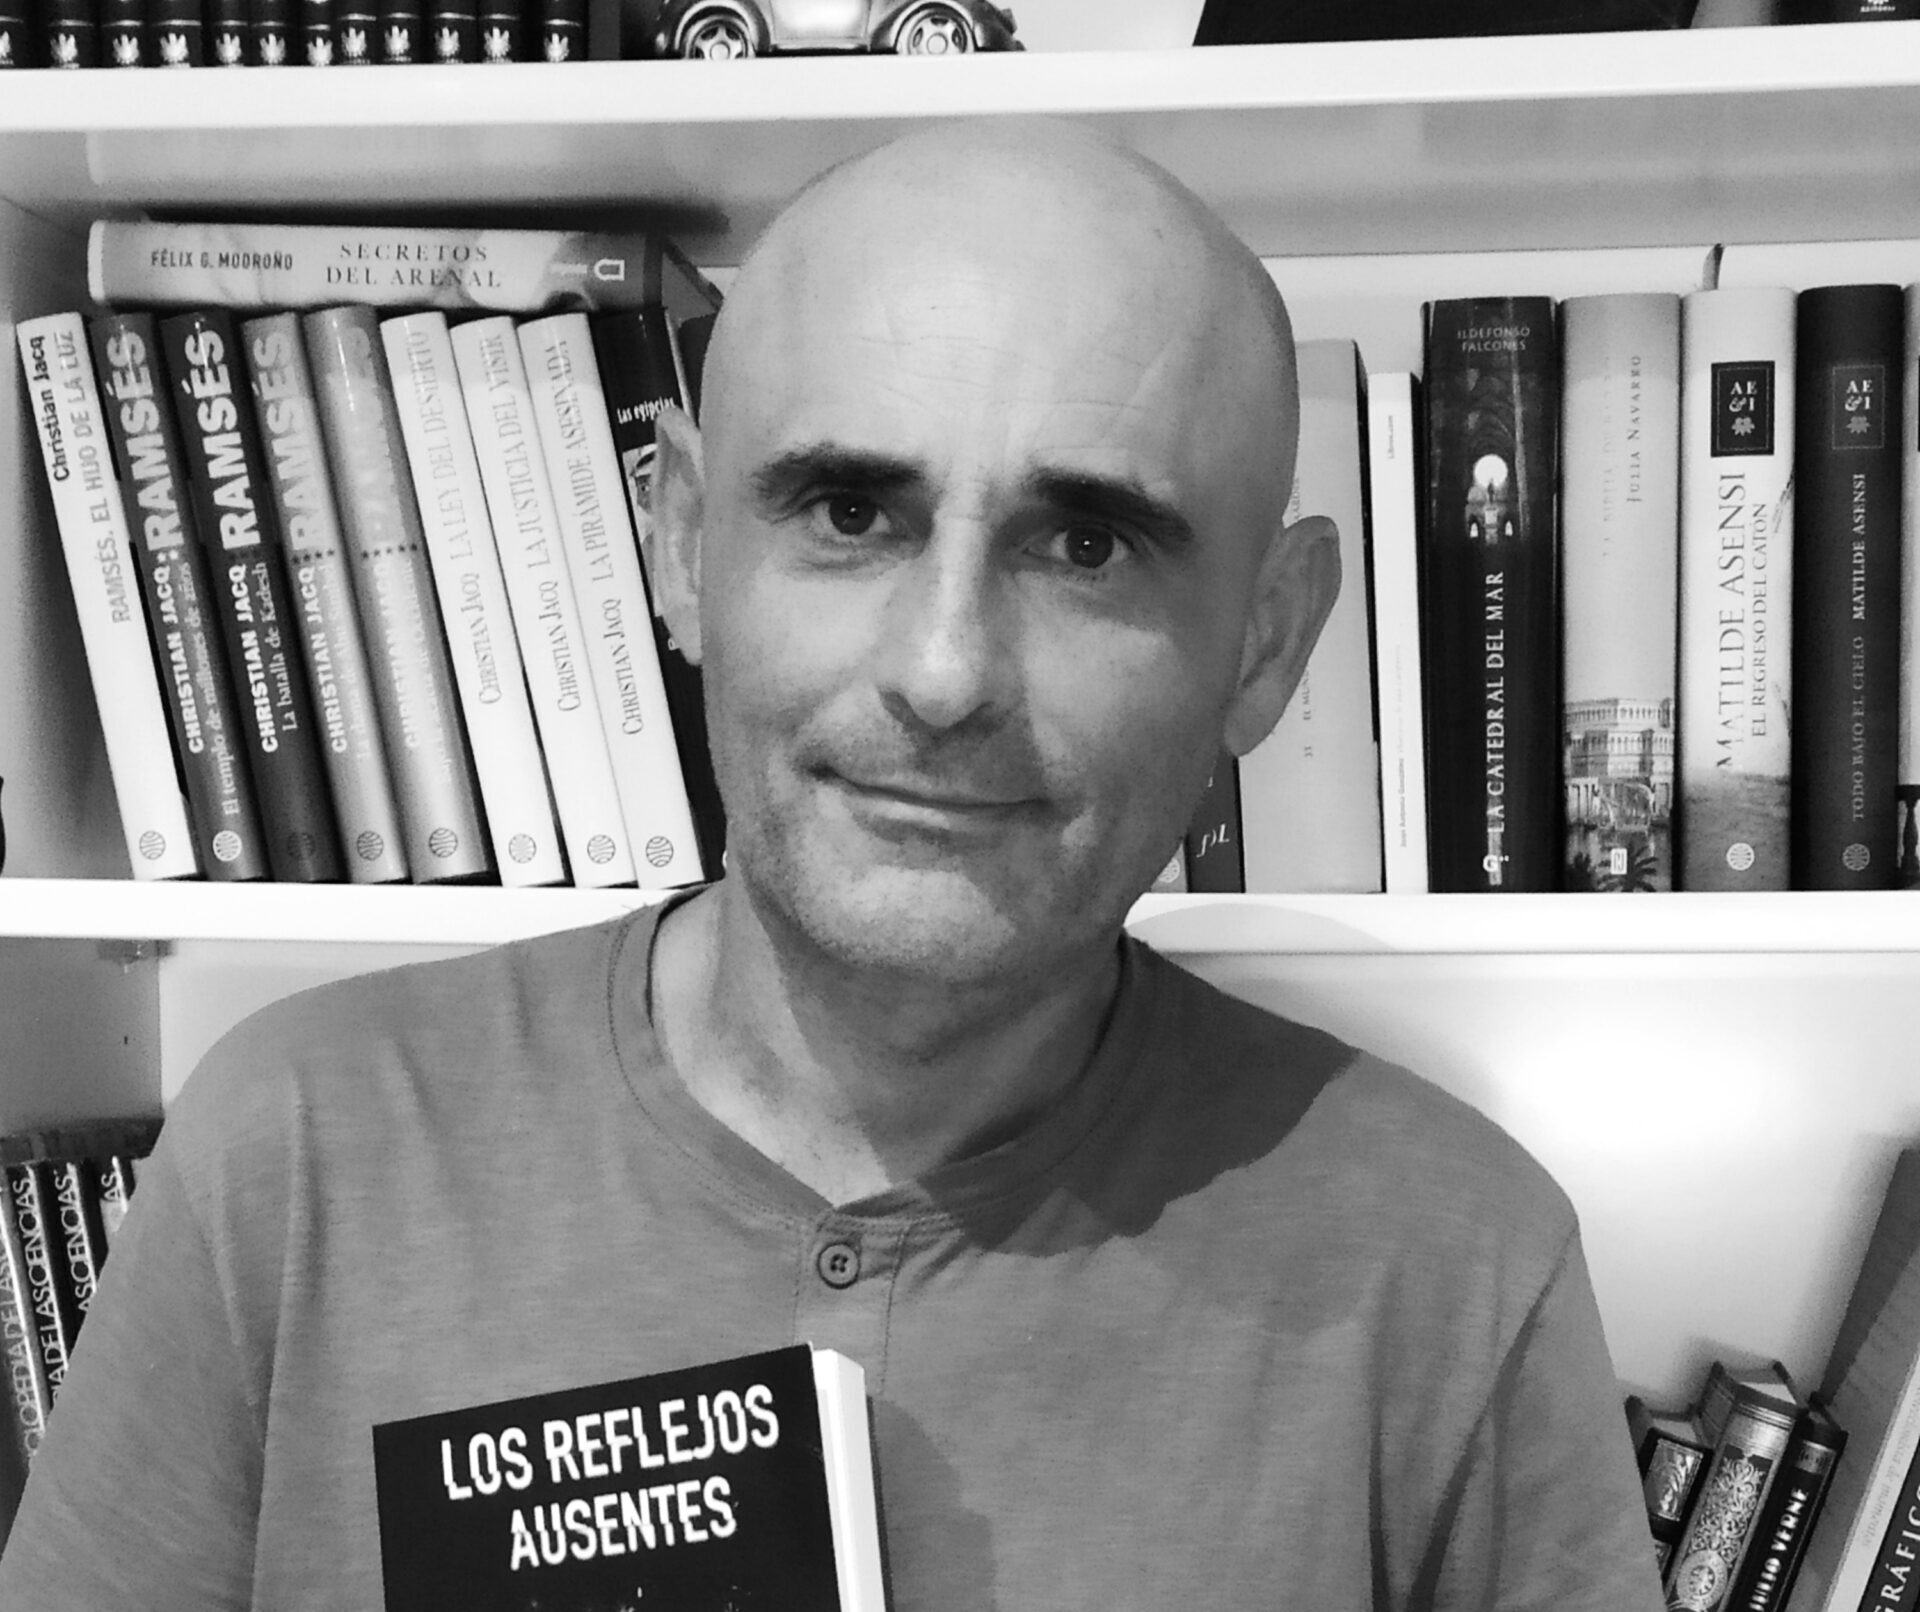 “Los reflejos ausentes”, primera novela romántica de Francisco Javier Rodenas